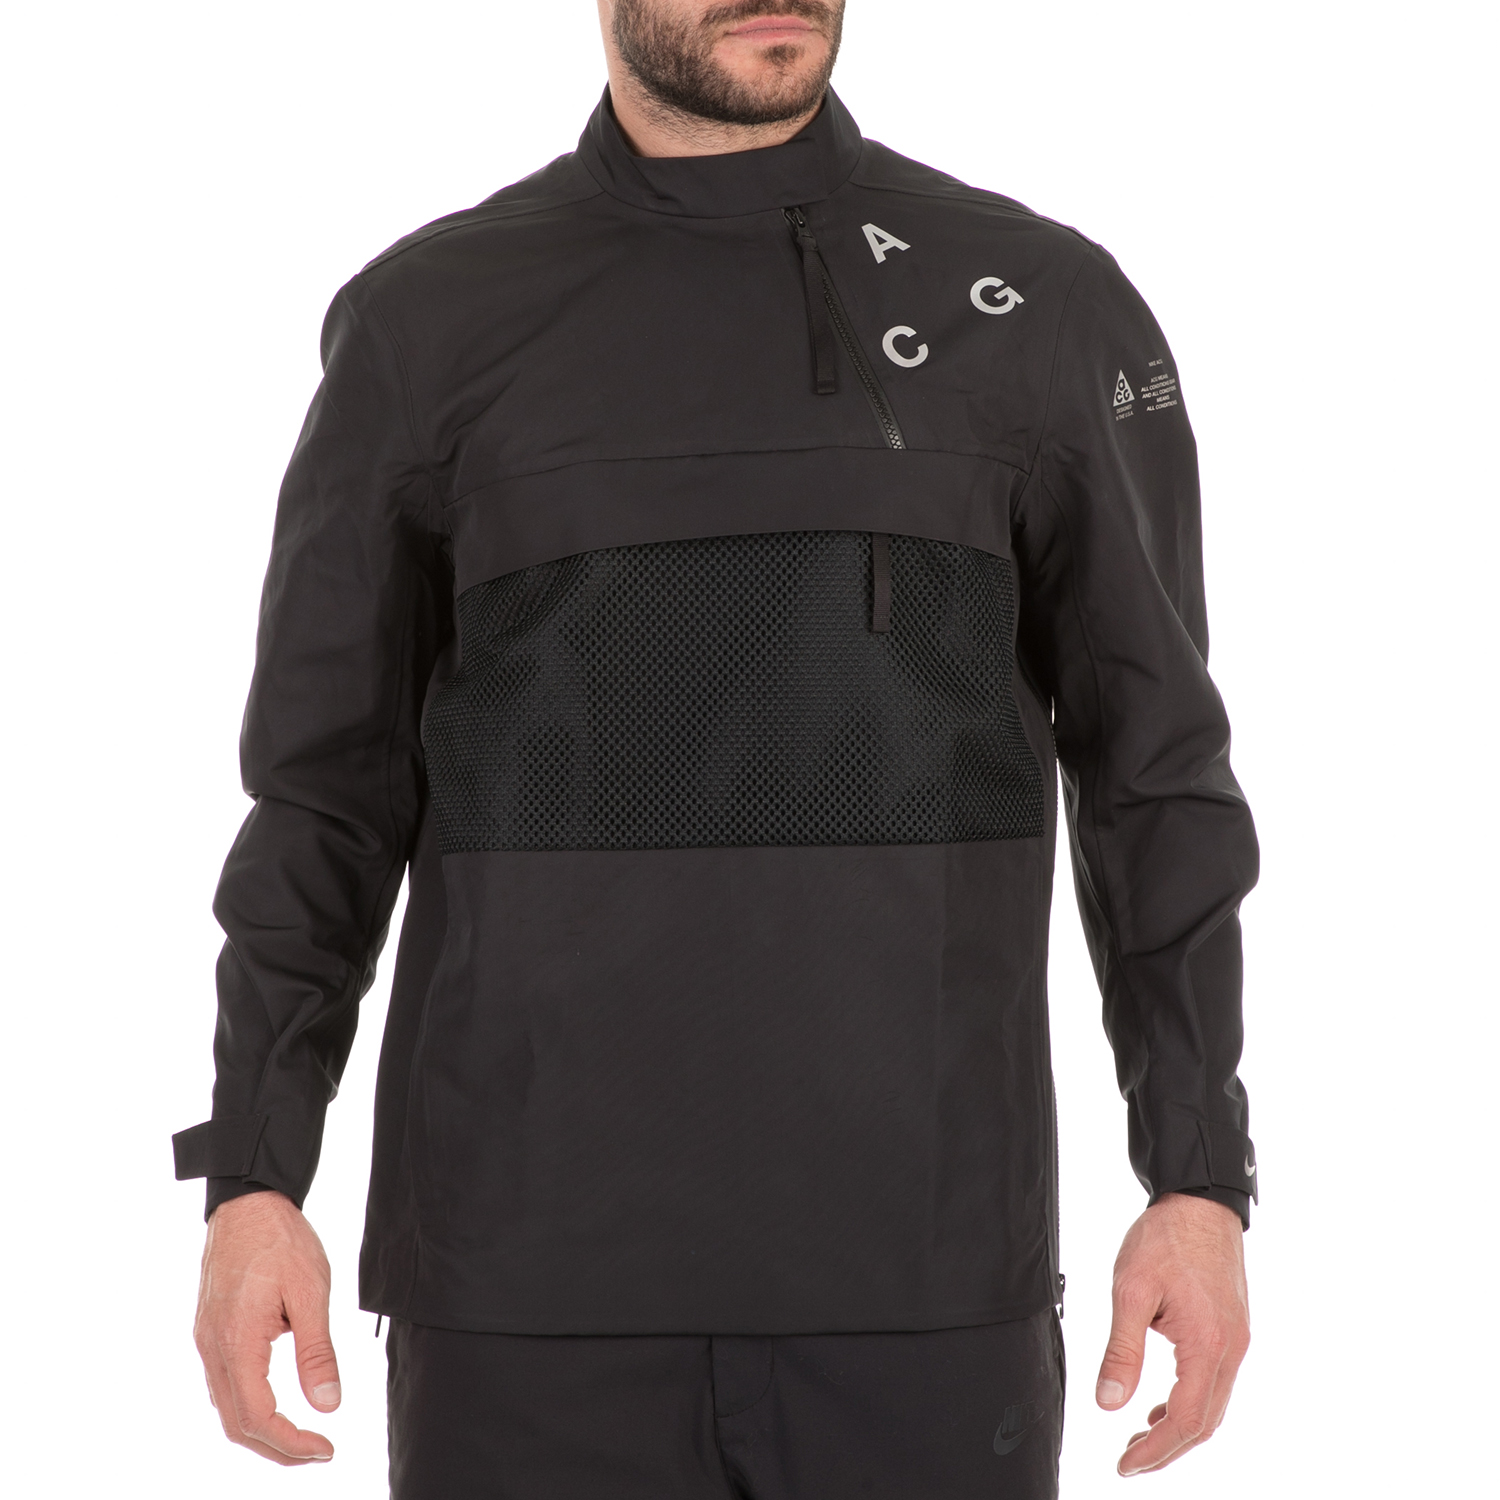 Ανδρικά/Ρούχα/Πανωφόρια/Τζάκετς NIKE - Ανδρικό jacket NIKE NRG ACG PO SHELL μαύρο